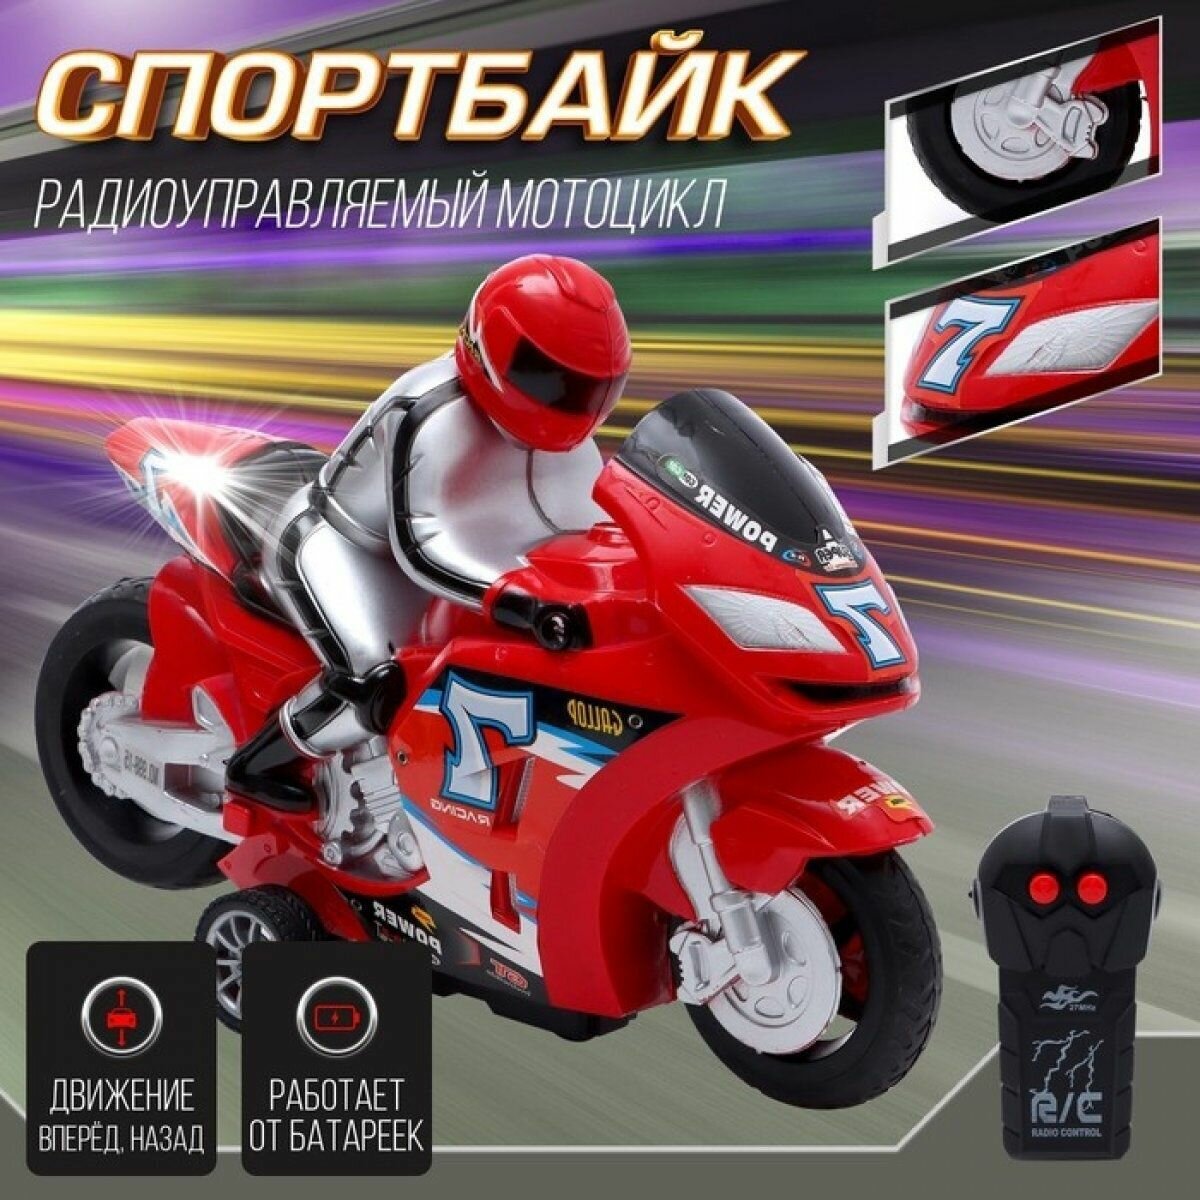 Мотоцикл радиоуправляемый Спортбайк  работает от батареек цвет красный